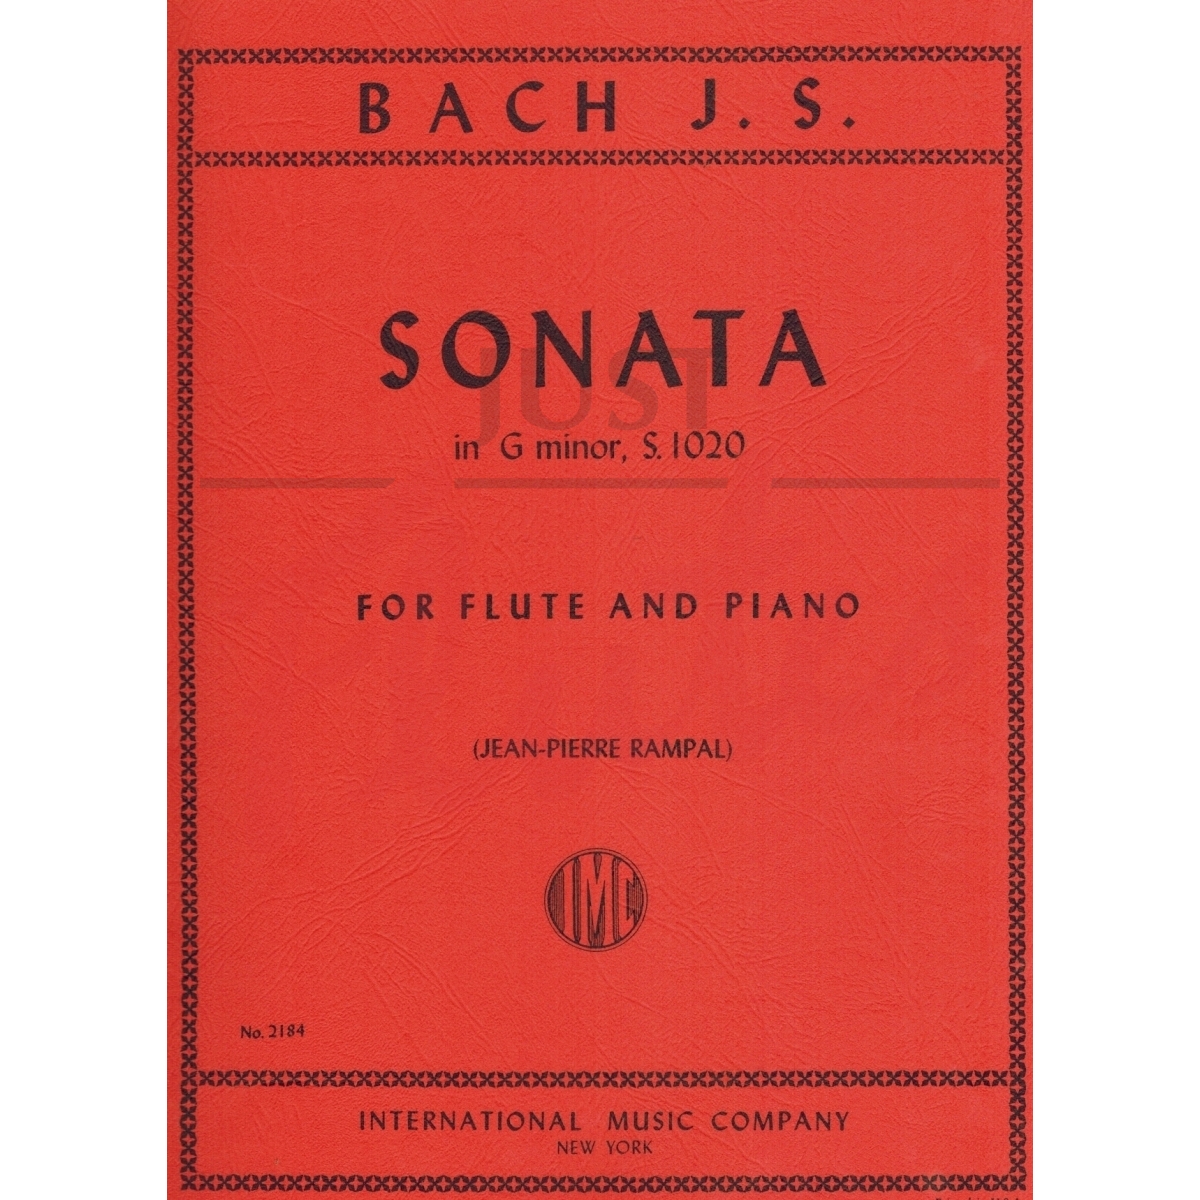 Sonata in G minor for Flute and Piano